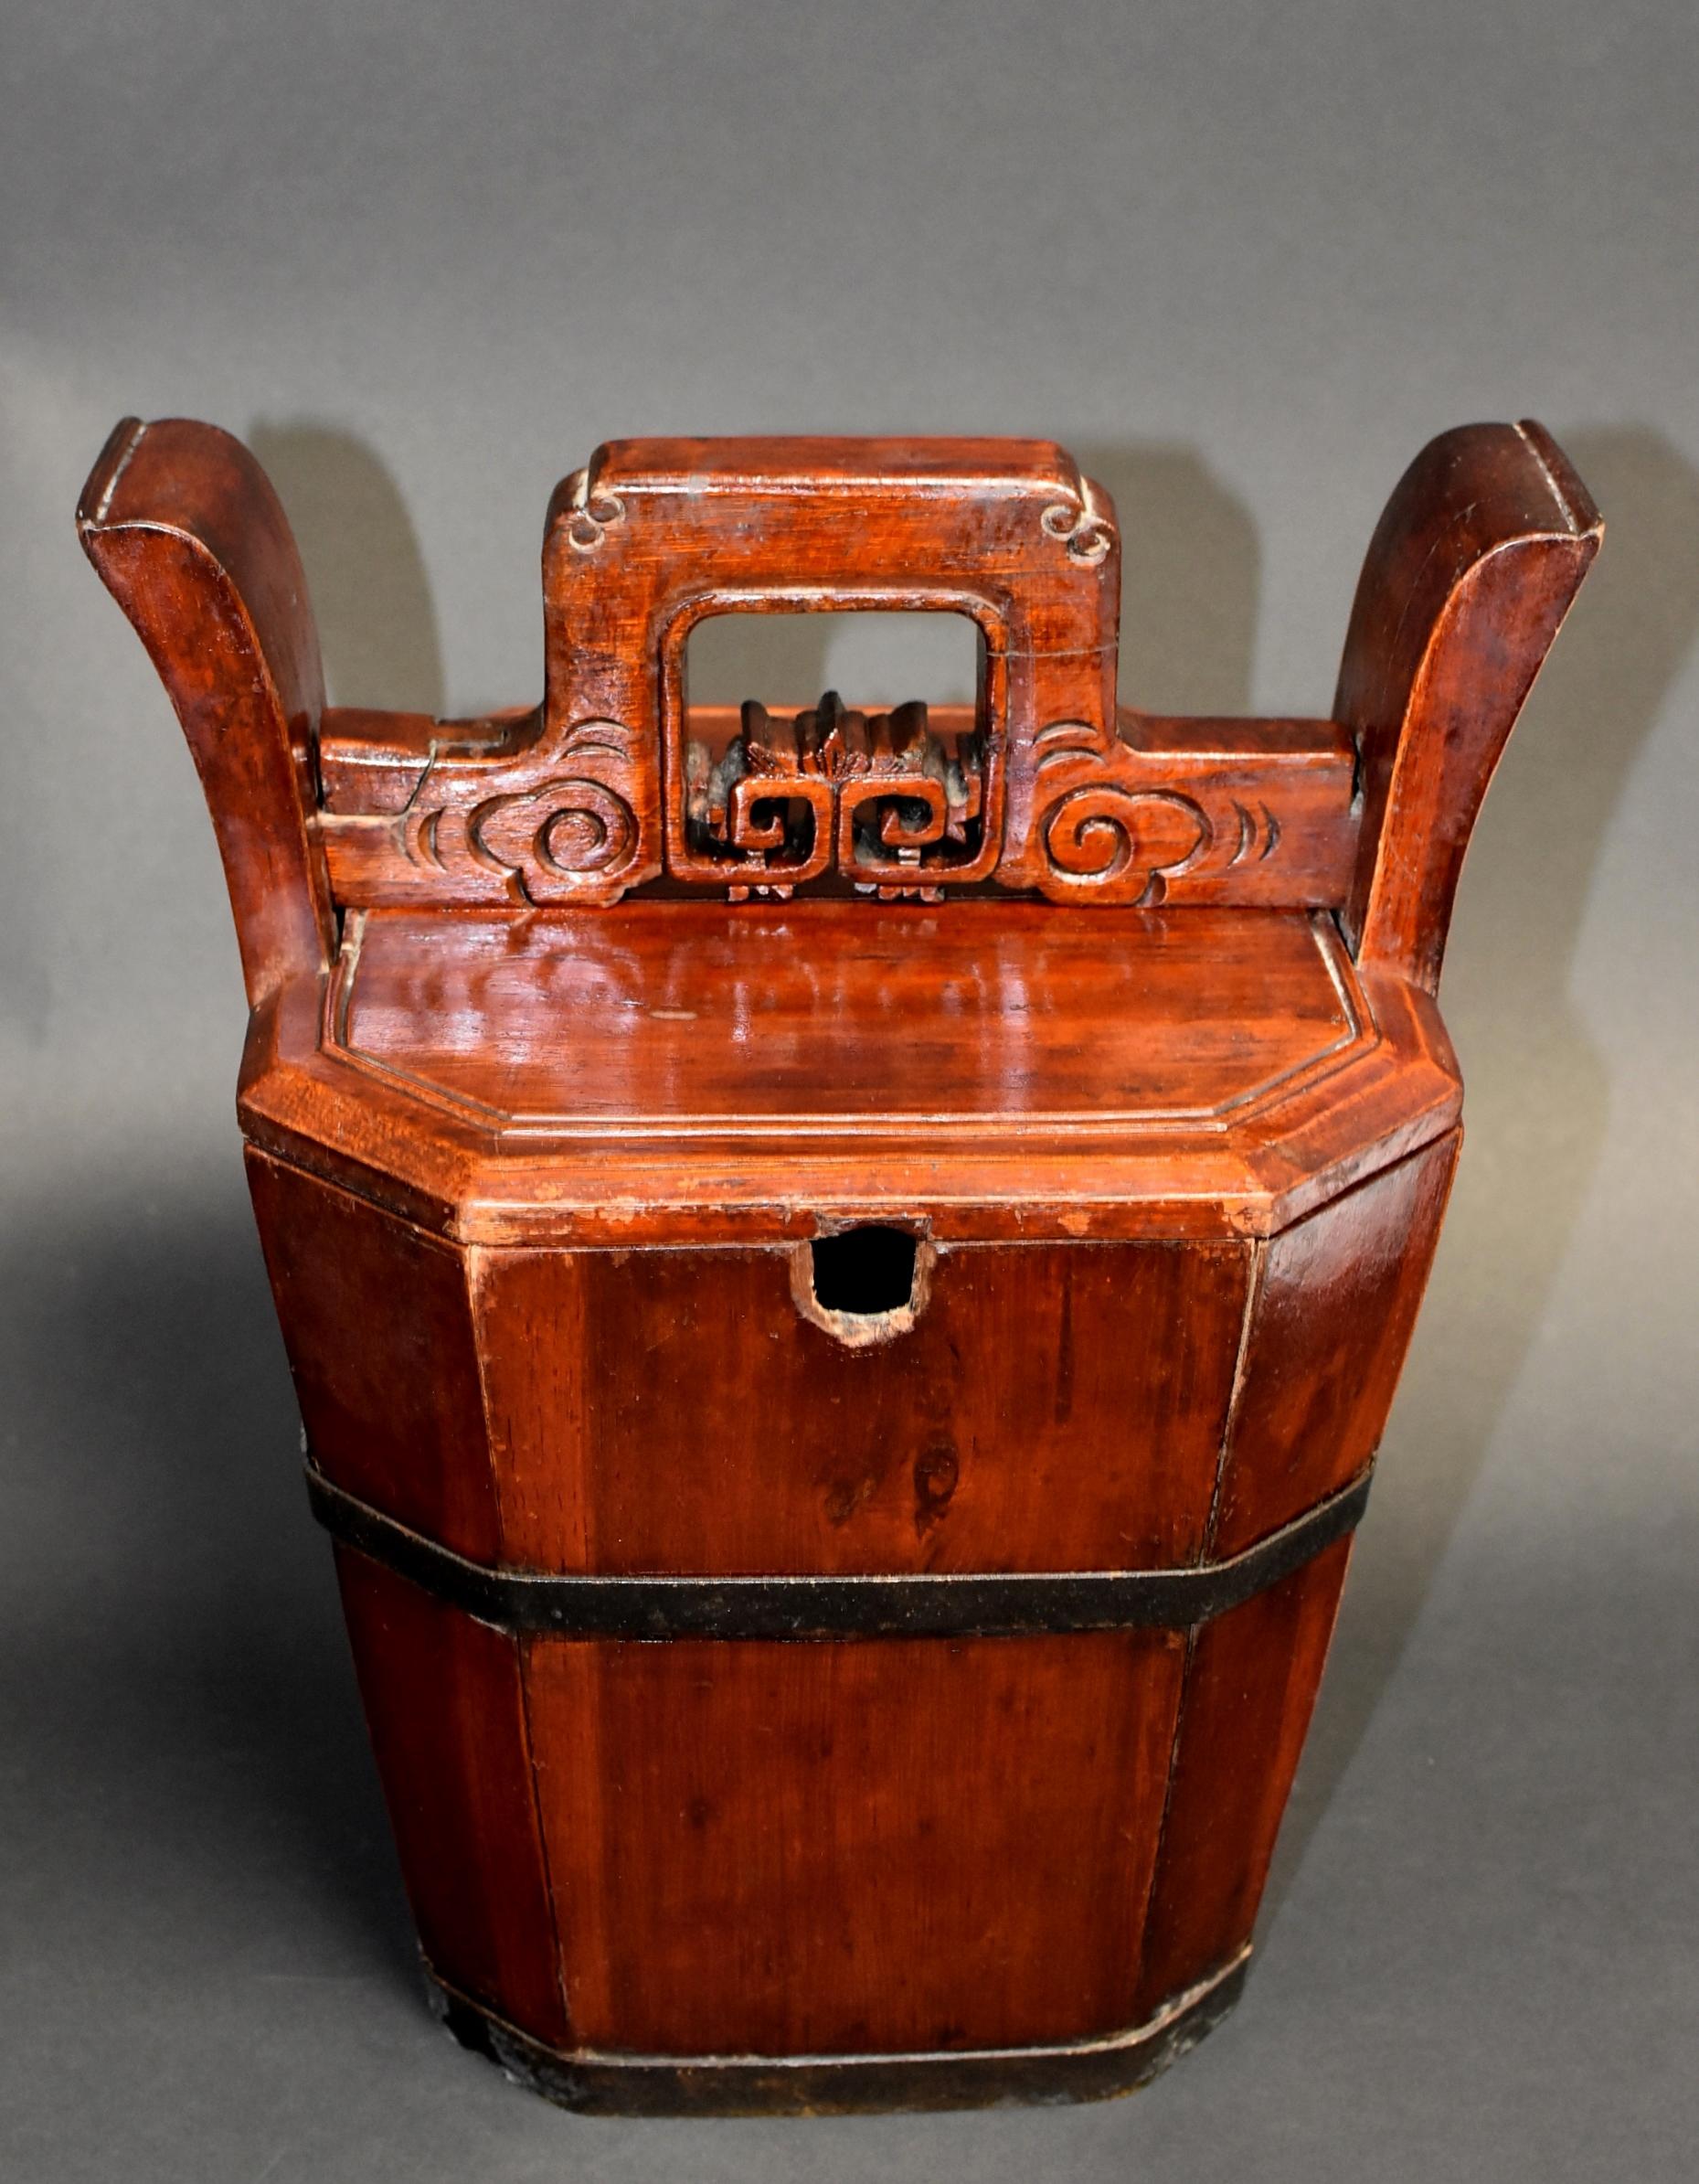 Ein schöner Holzkorb aus dem 19. Jahrhundert, der zum Halten und Tragen einer Teekanne dient. Die 6 Seiten des handgefertigten sechseckigen Korbes werden von 2 massiven Bronzebändern zusammengehalten. Oberhalb des Deckels befindet sich eine